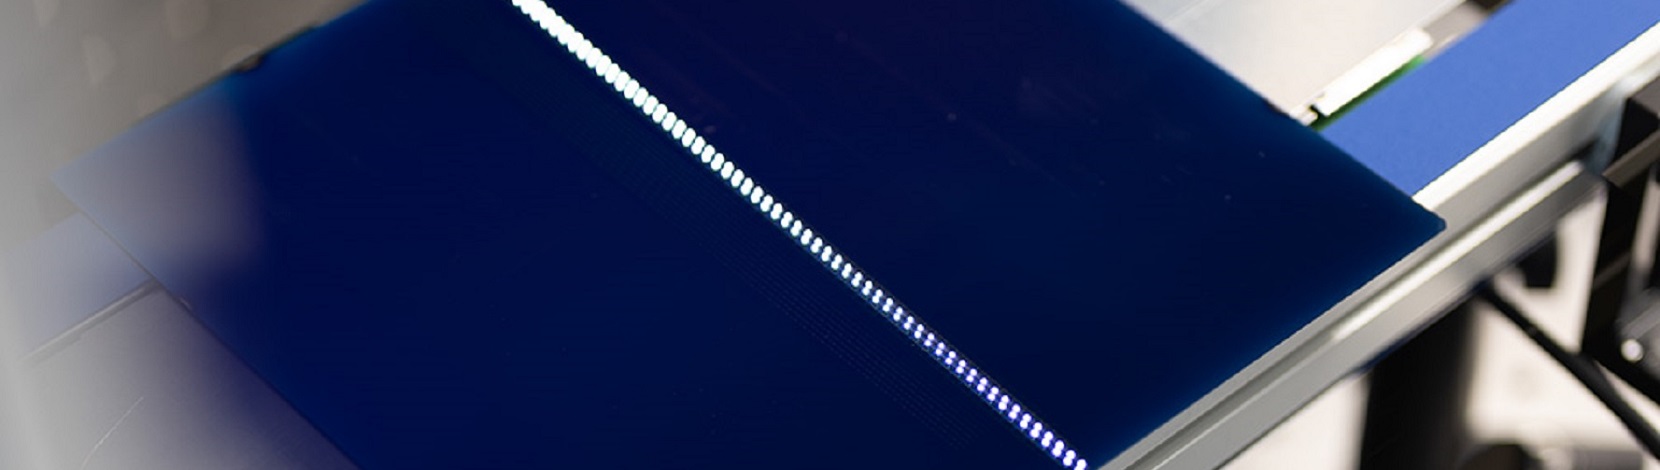 Laseranlage verarbeitet grosse Wafer in Hochgeschwindigkeit – Electrosuisse